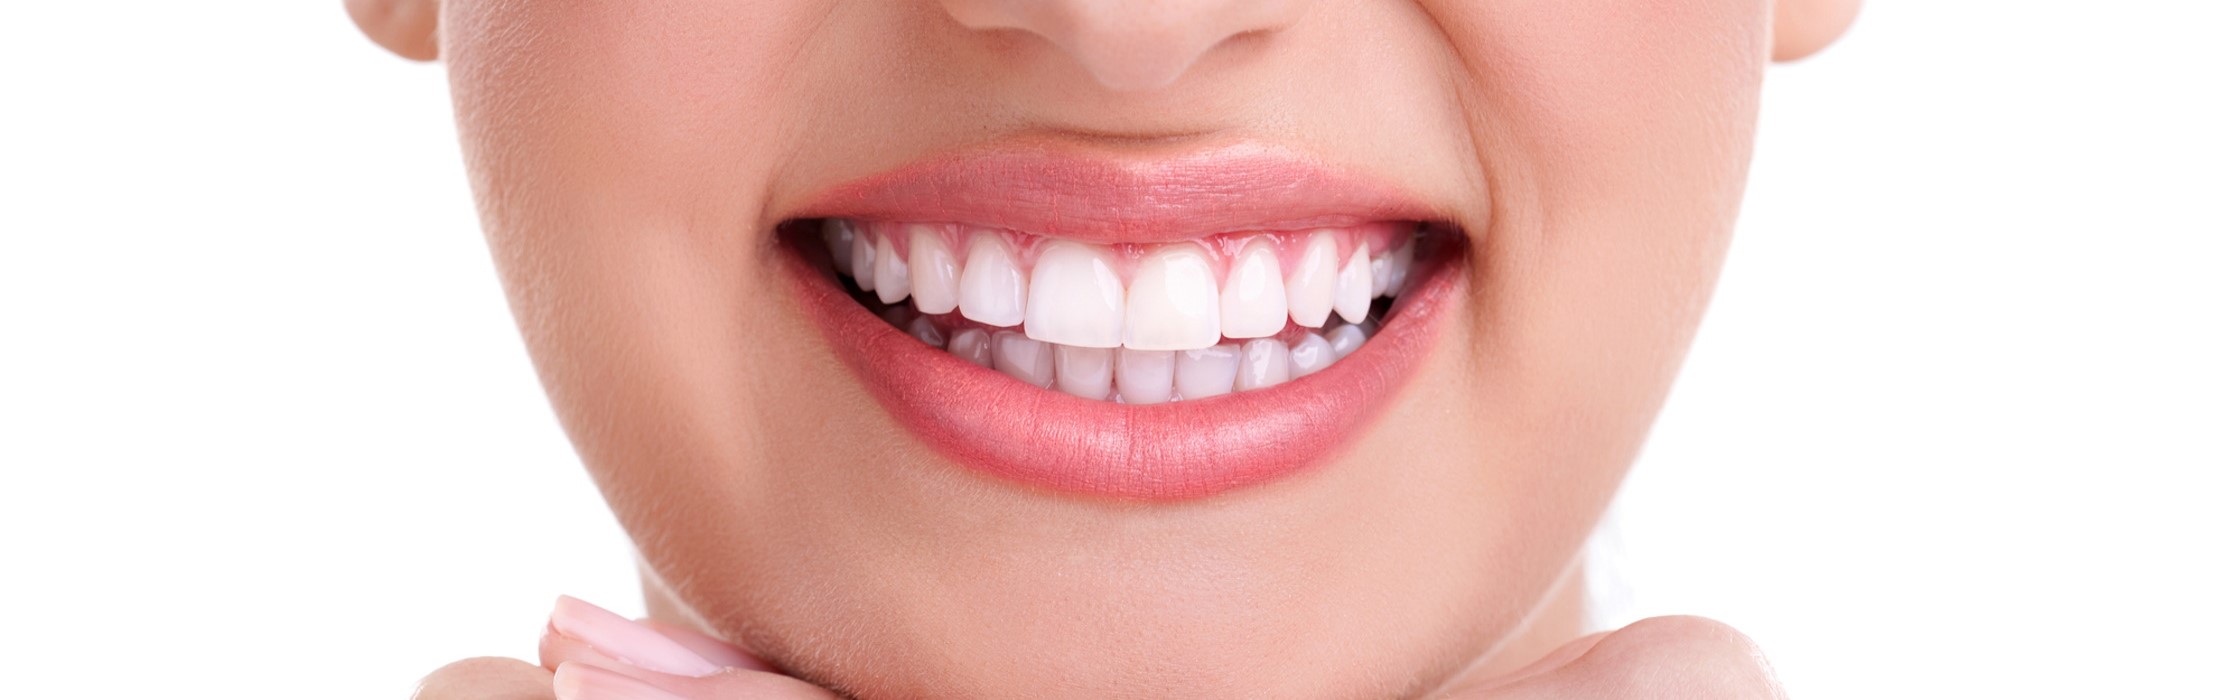 Kalzium: Bedeutsamer Baustein für gesunde Zähne